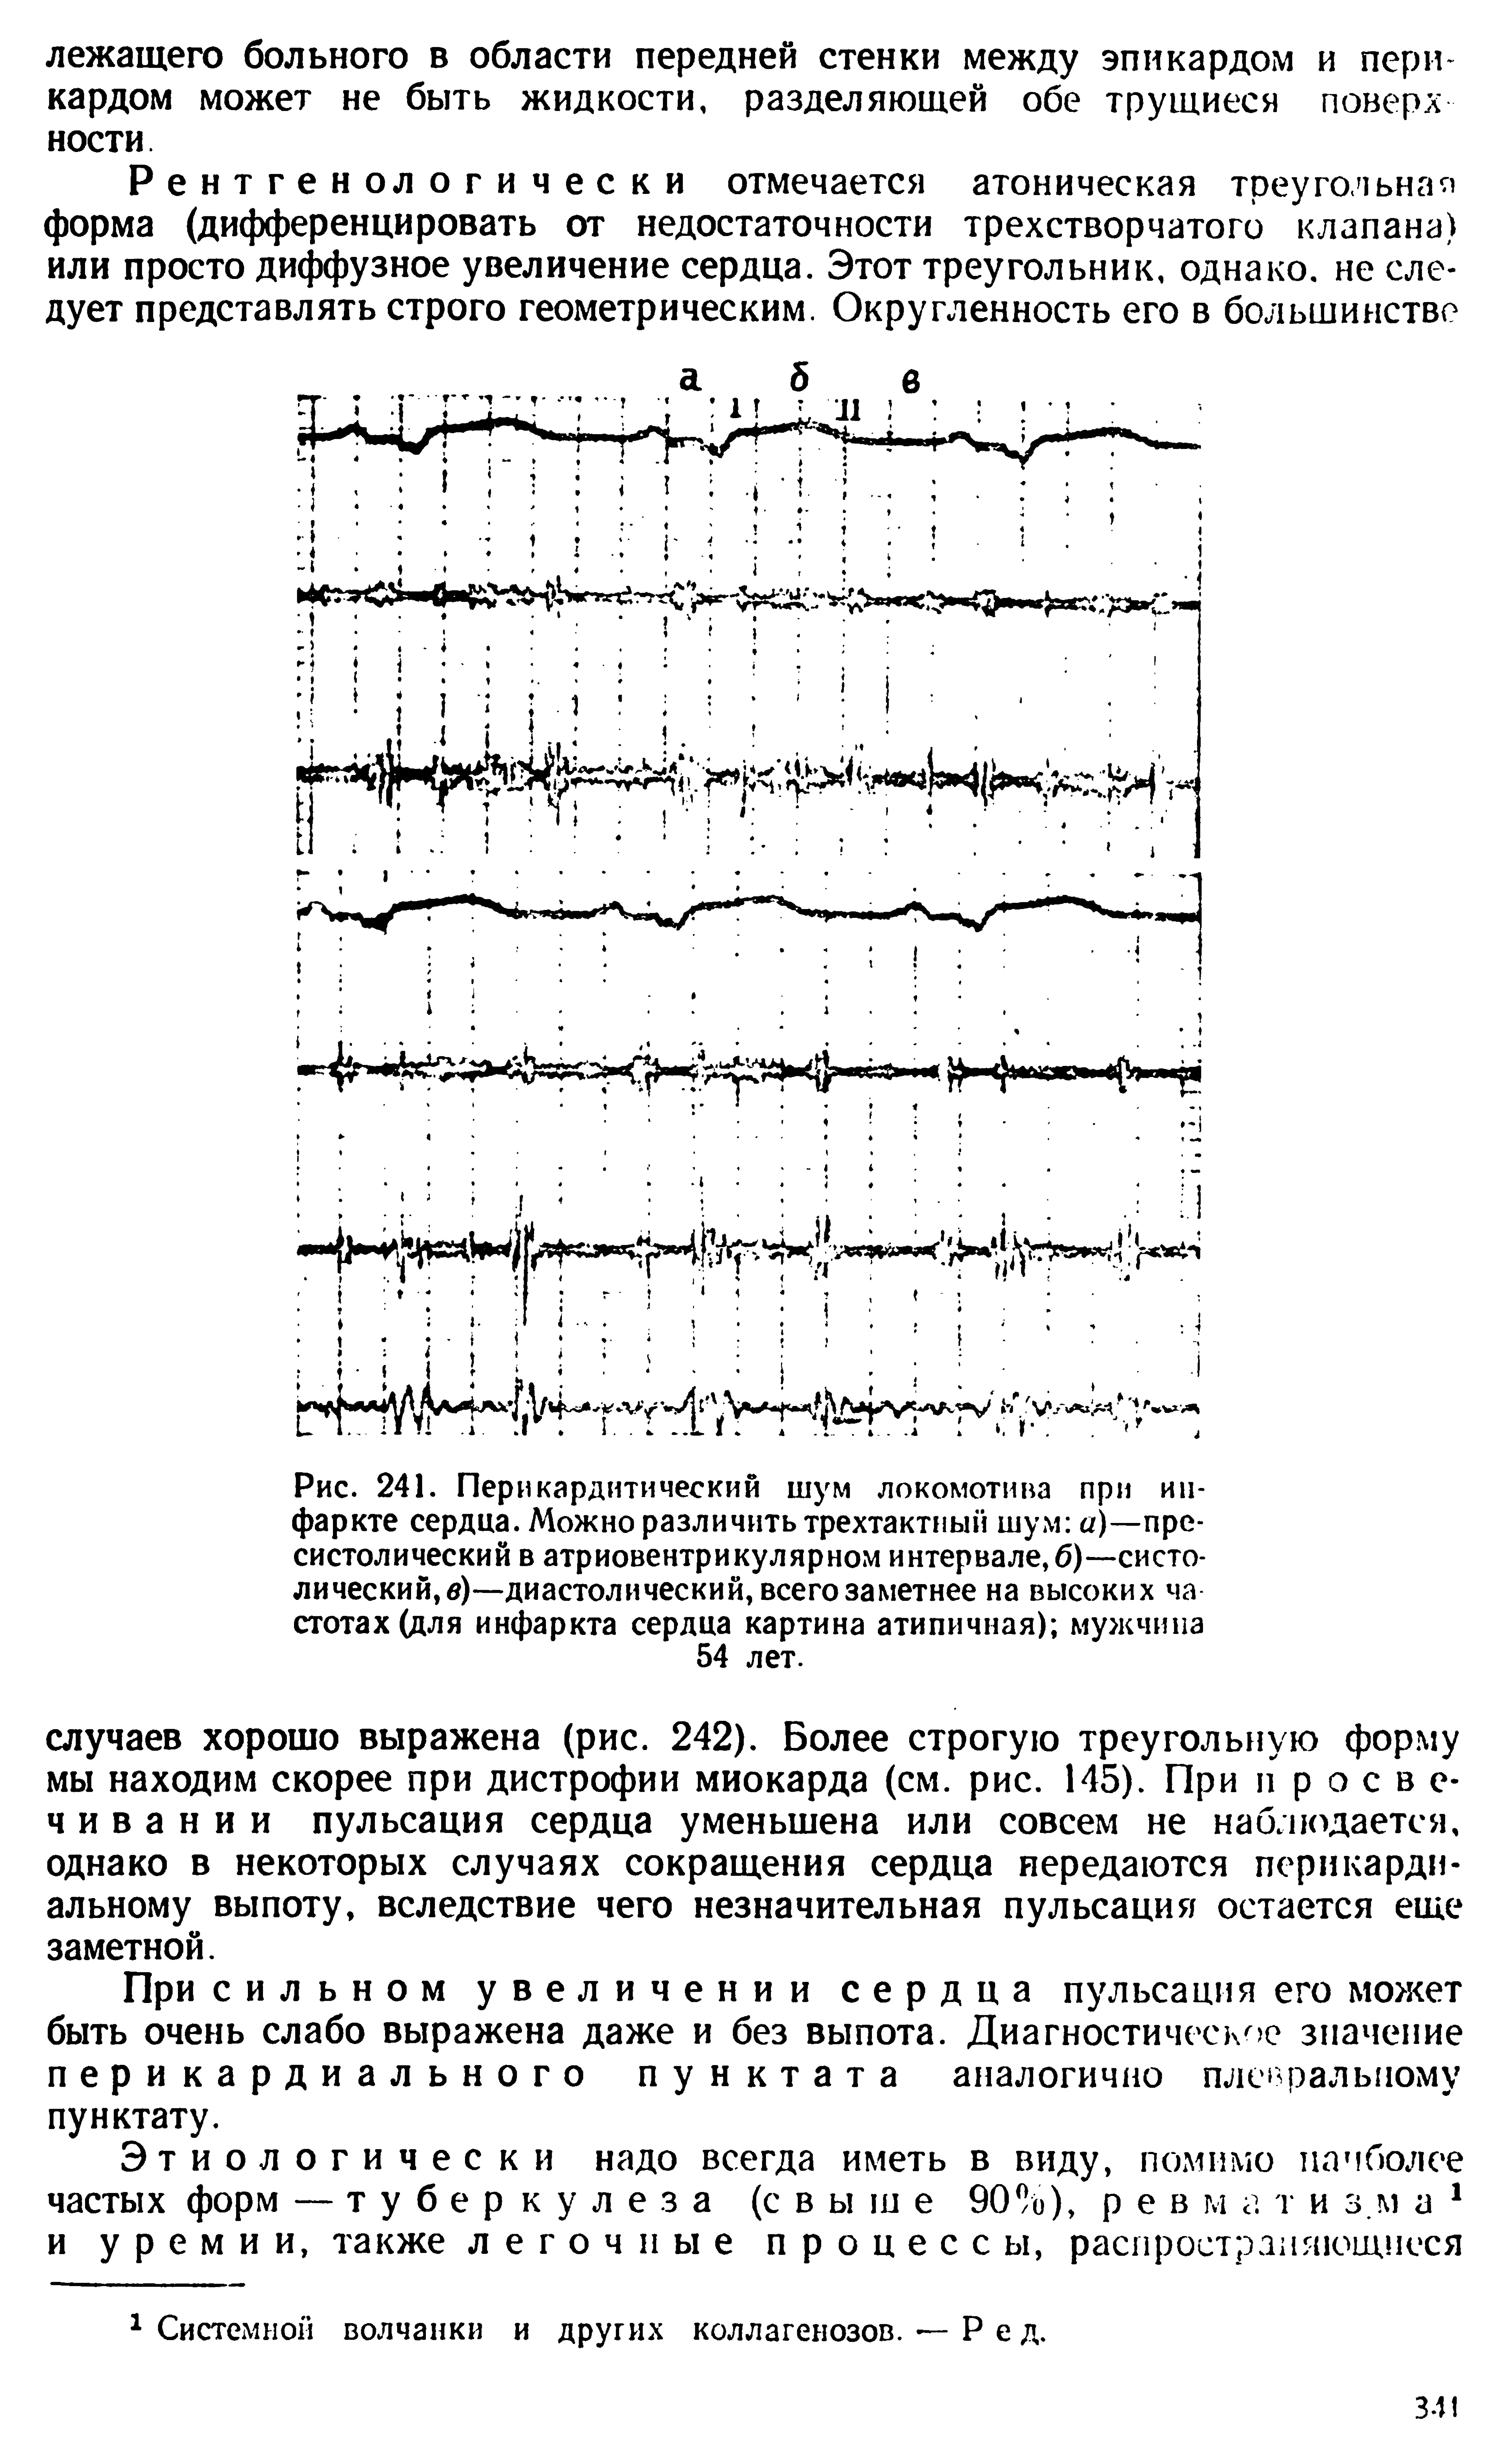 Рис. 241. Перикардитический шум локомотива при инфаркте сердца. Можно различить трехтактный шум а)—пре-систолический в атриовентрикулярном интервале, 6)—систолический, в)—диастолический, всего заметнее на высоких частотах (для инфаркта сердца картина атипичная) мужчина 54 лет.